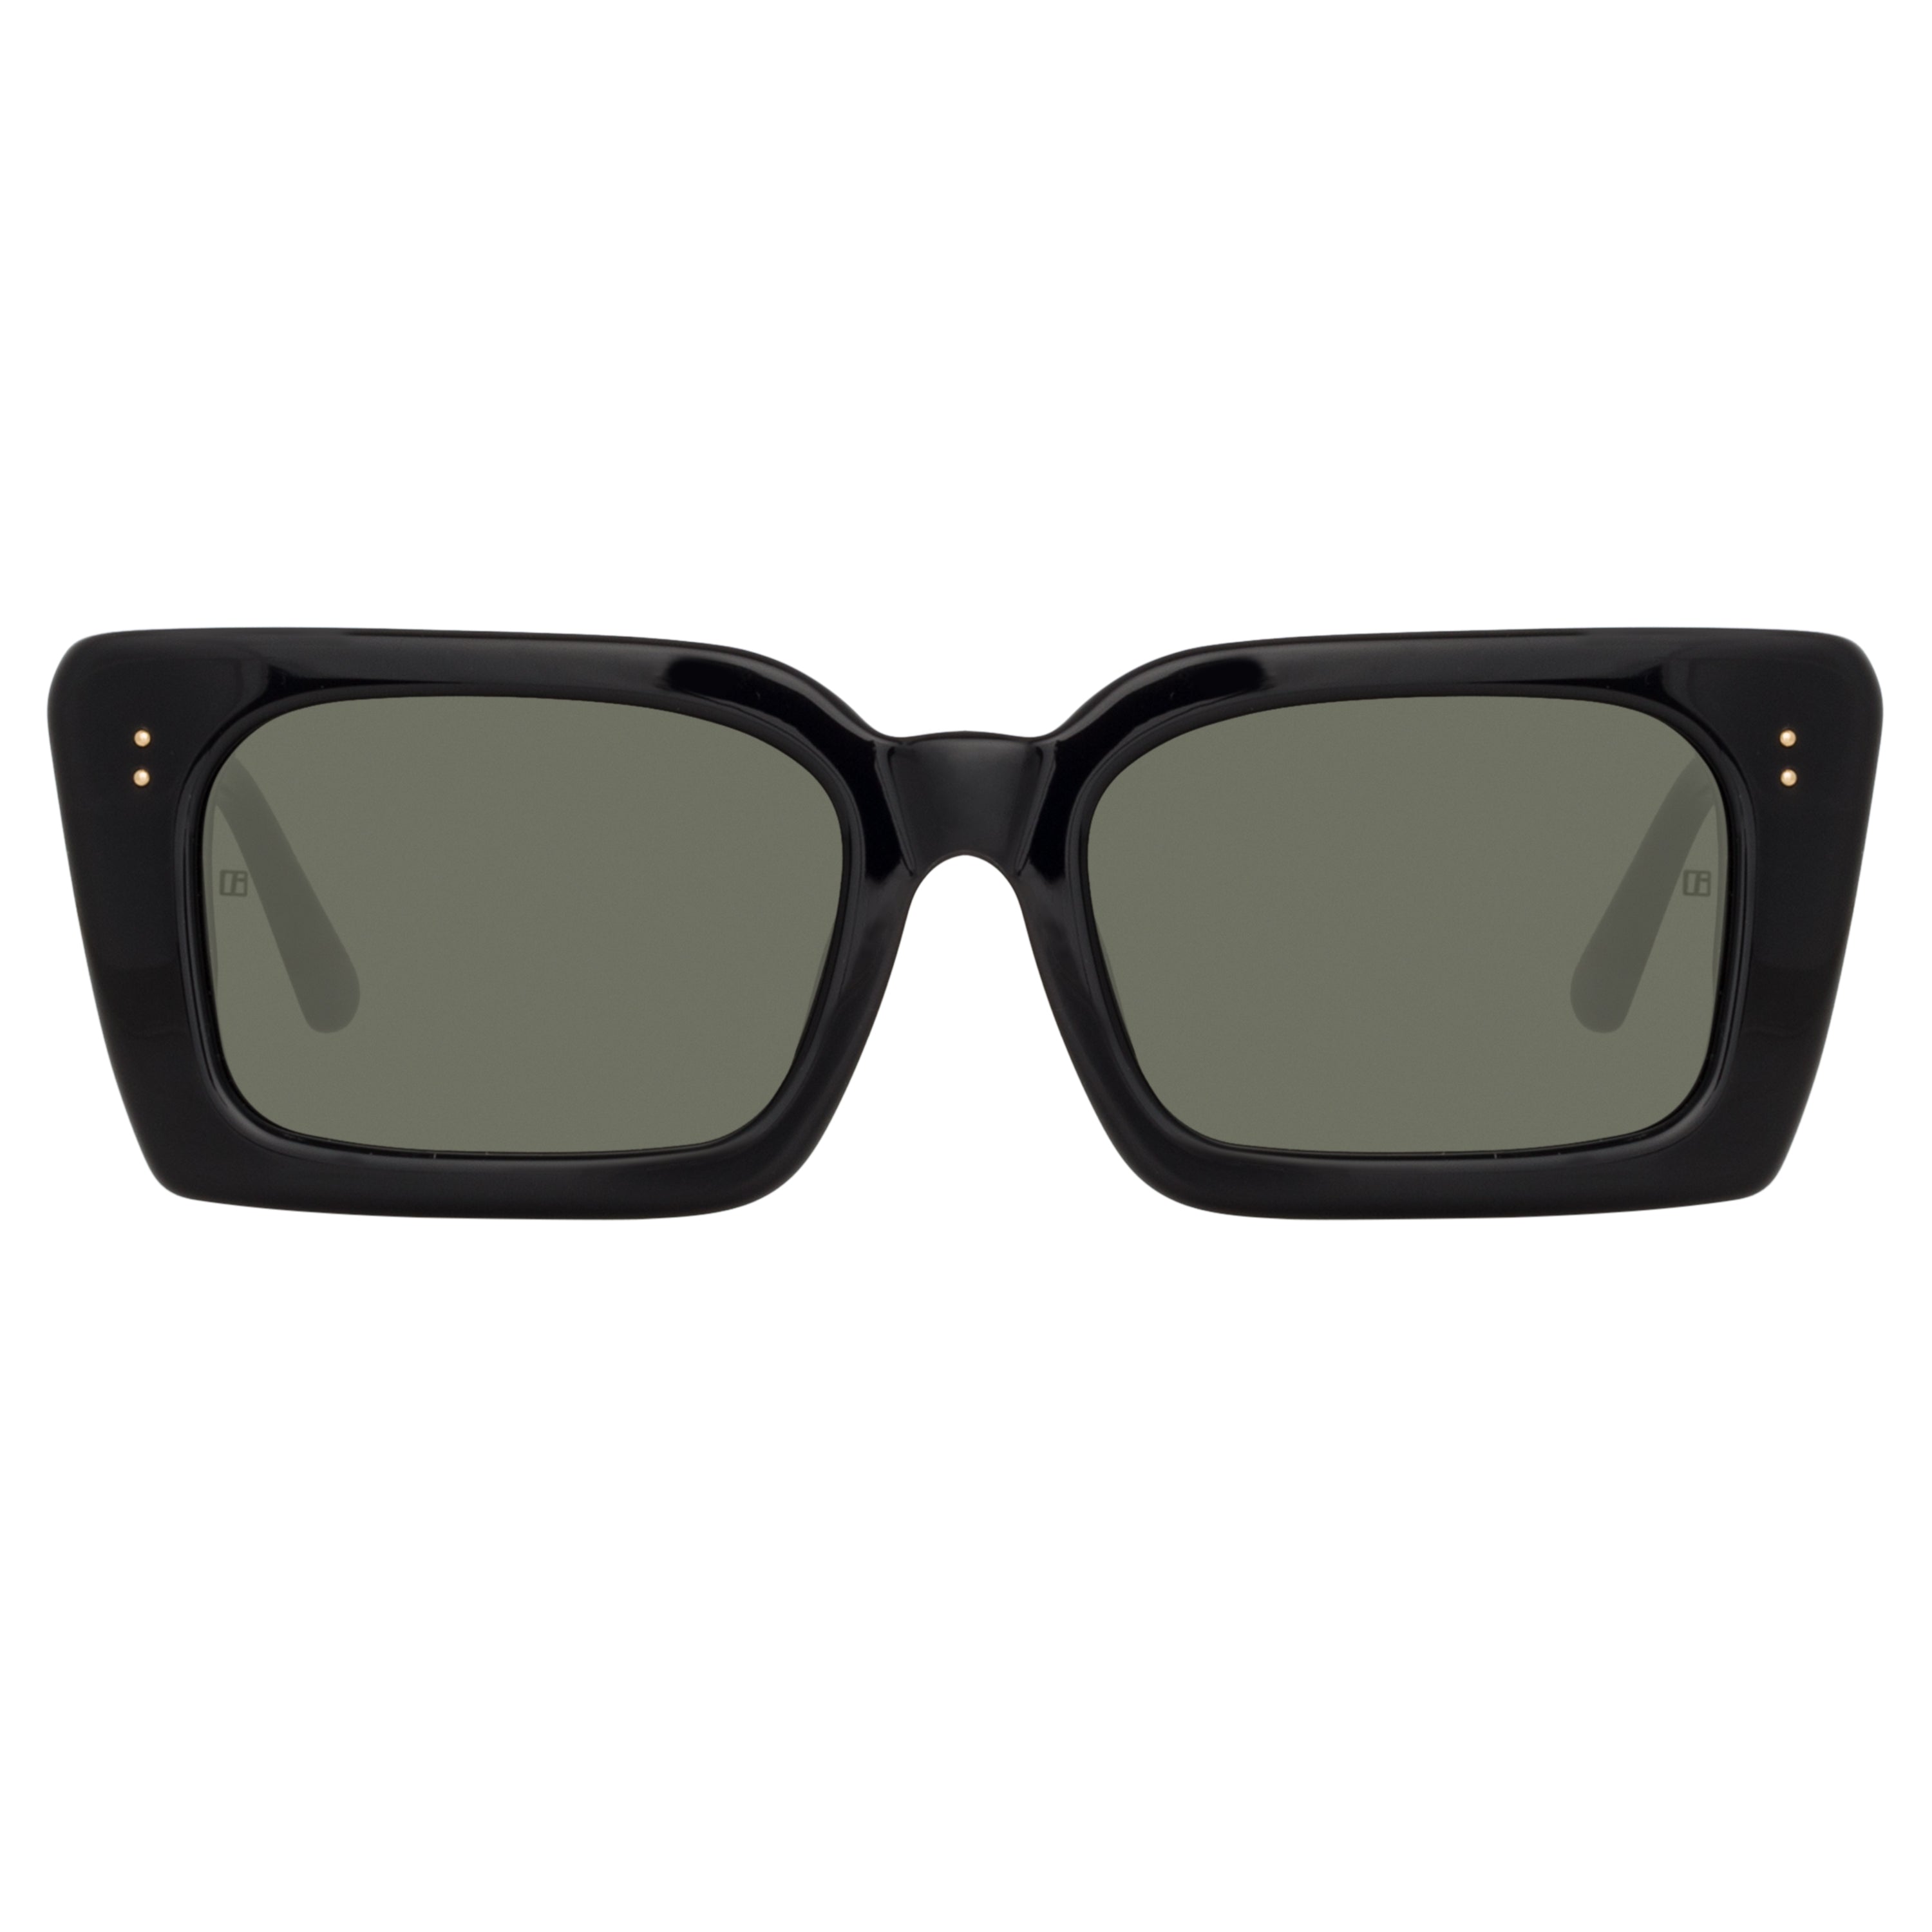 Nieve Rectangular Sunglasses in Black